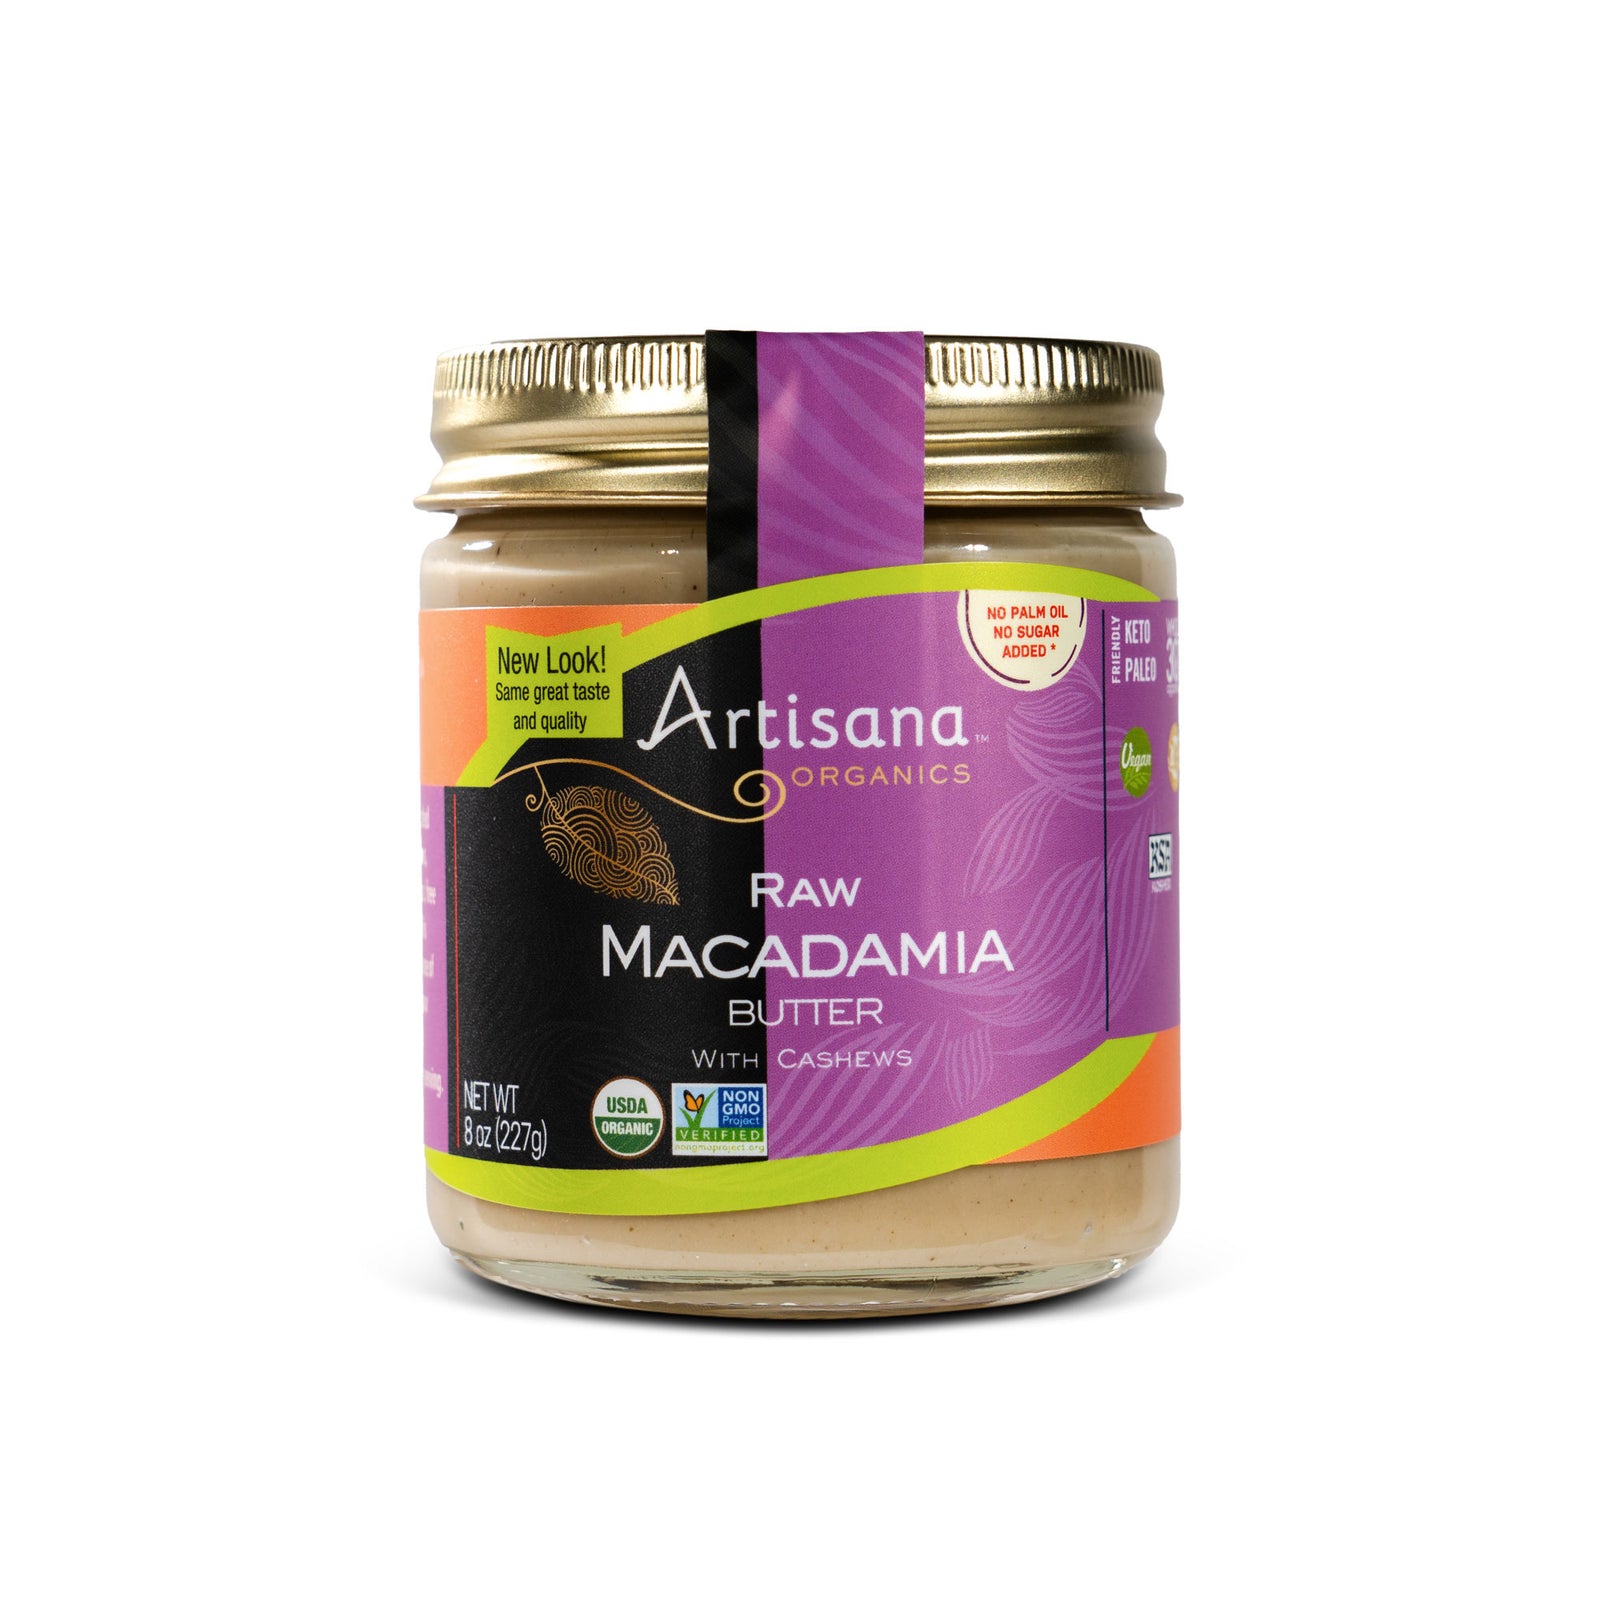 Artisana Organics Raw Macadamia Butter with Cashew in 8oz jar